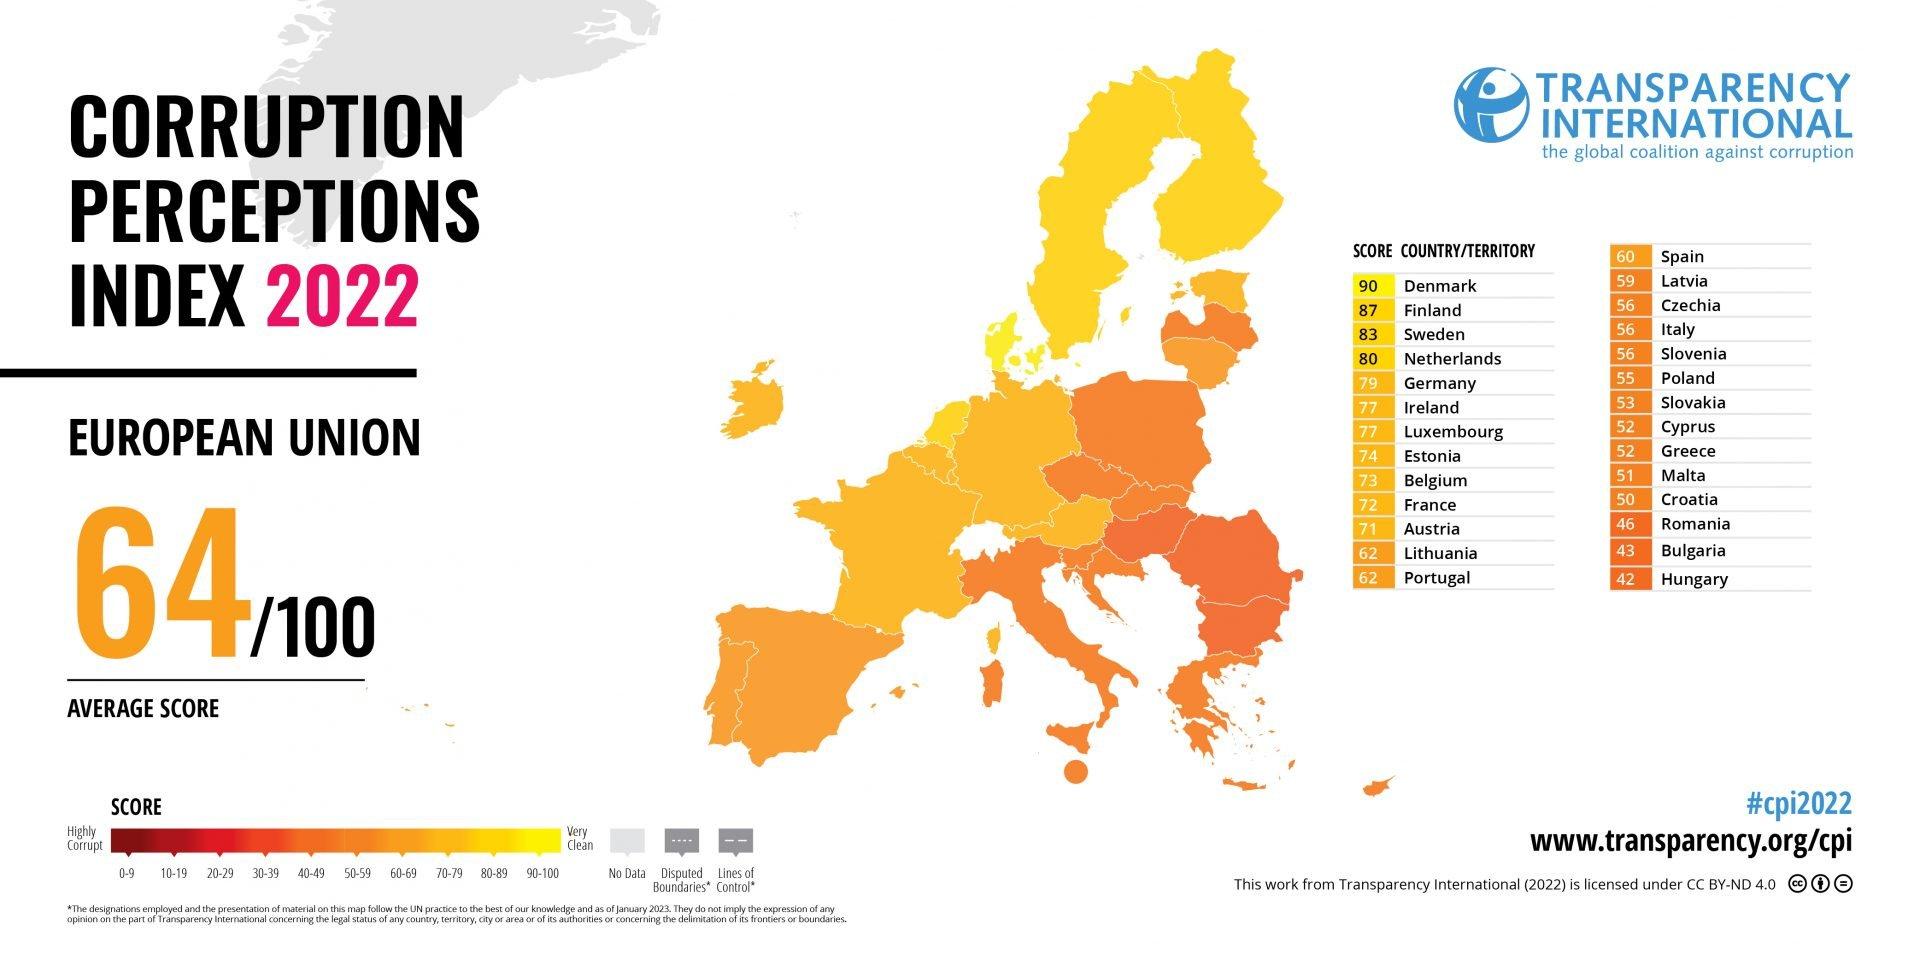 Mapa Europy pokazująca skłonnośc do korupcji: na wschodzie jest większa (mapa w kolorze żołto-pomarańczowym)